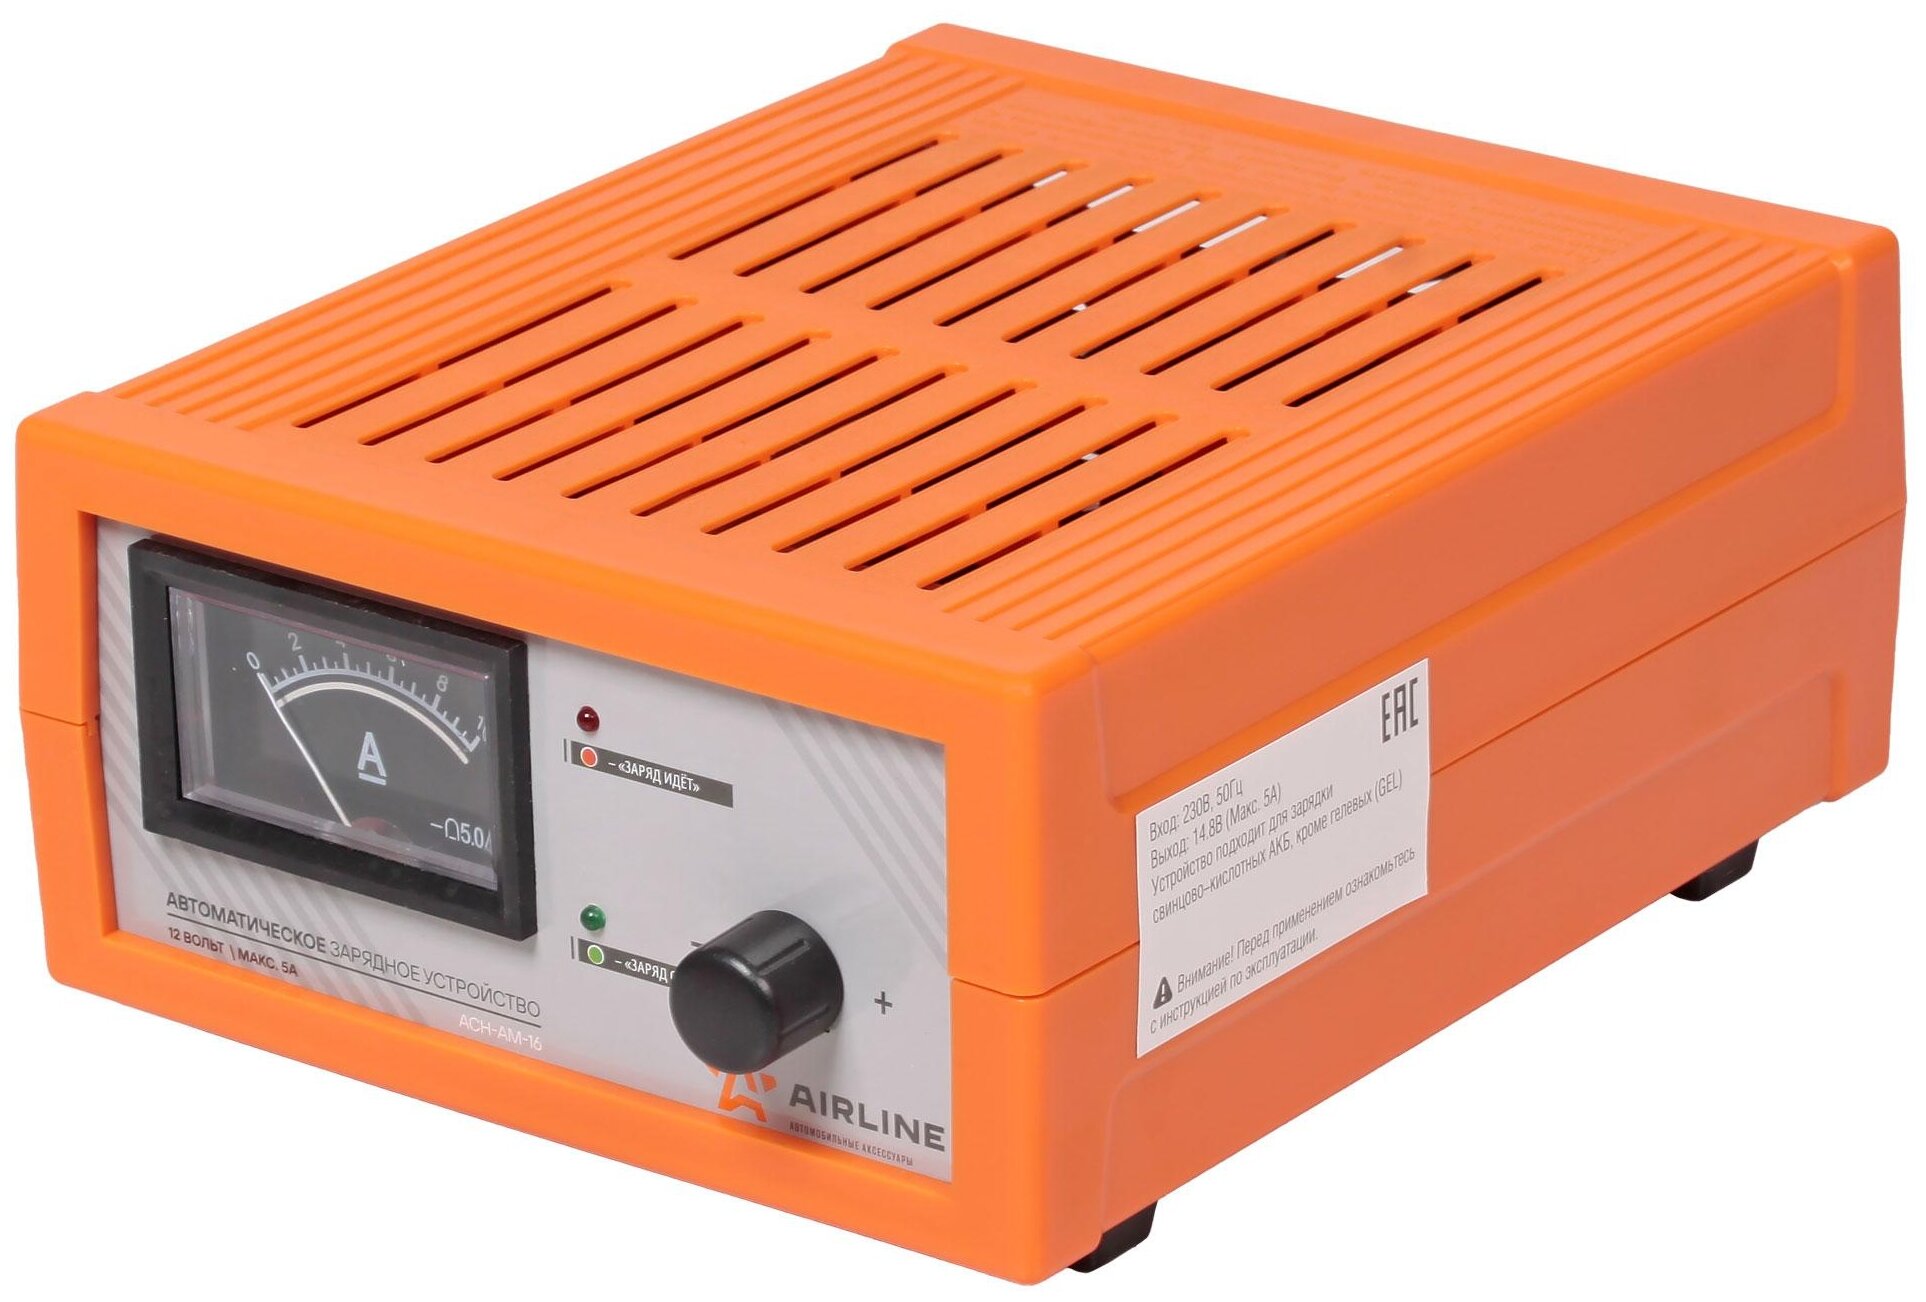 Зарядное устройство 0-5А 12В, амперметр, ручная регулировка зарядного тока, импульсное (ACH-AM-16)